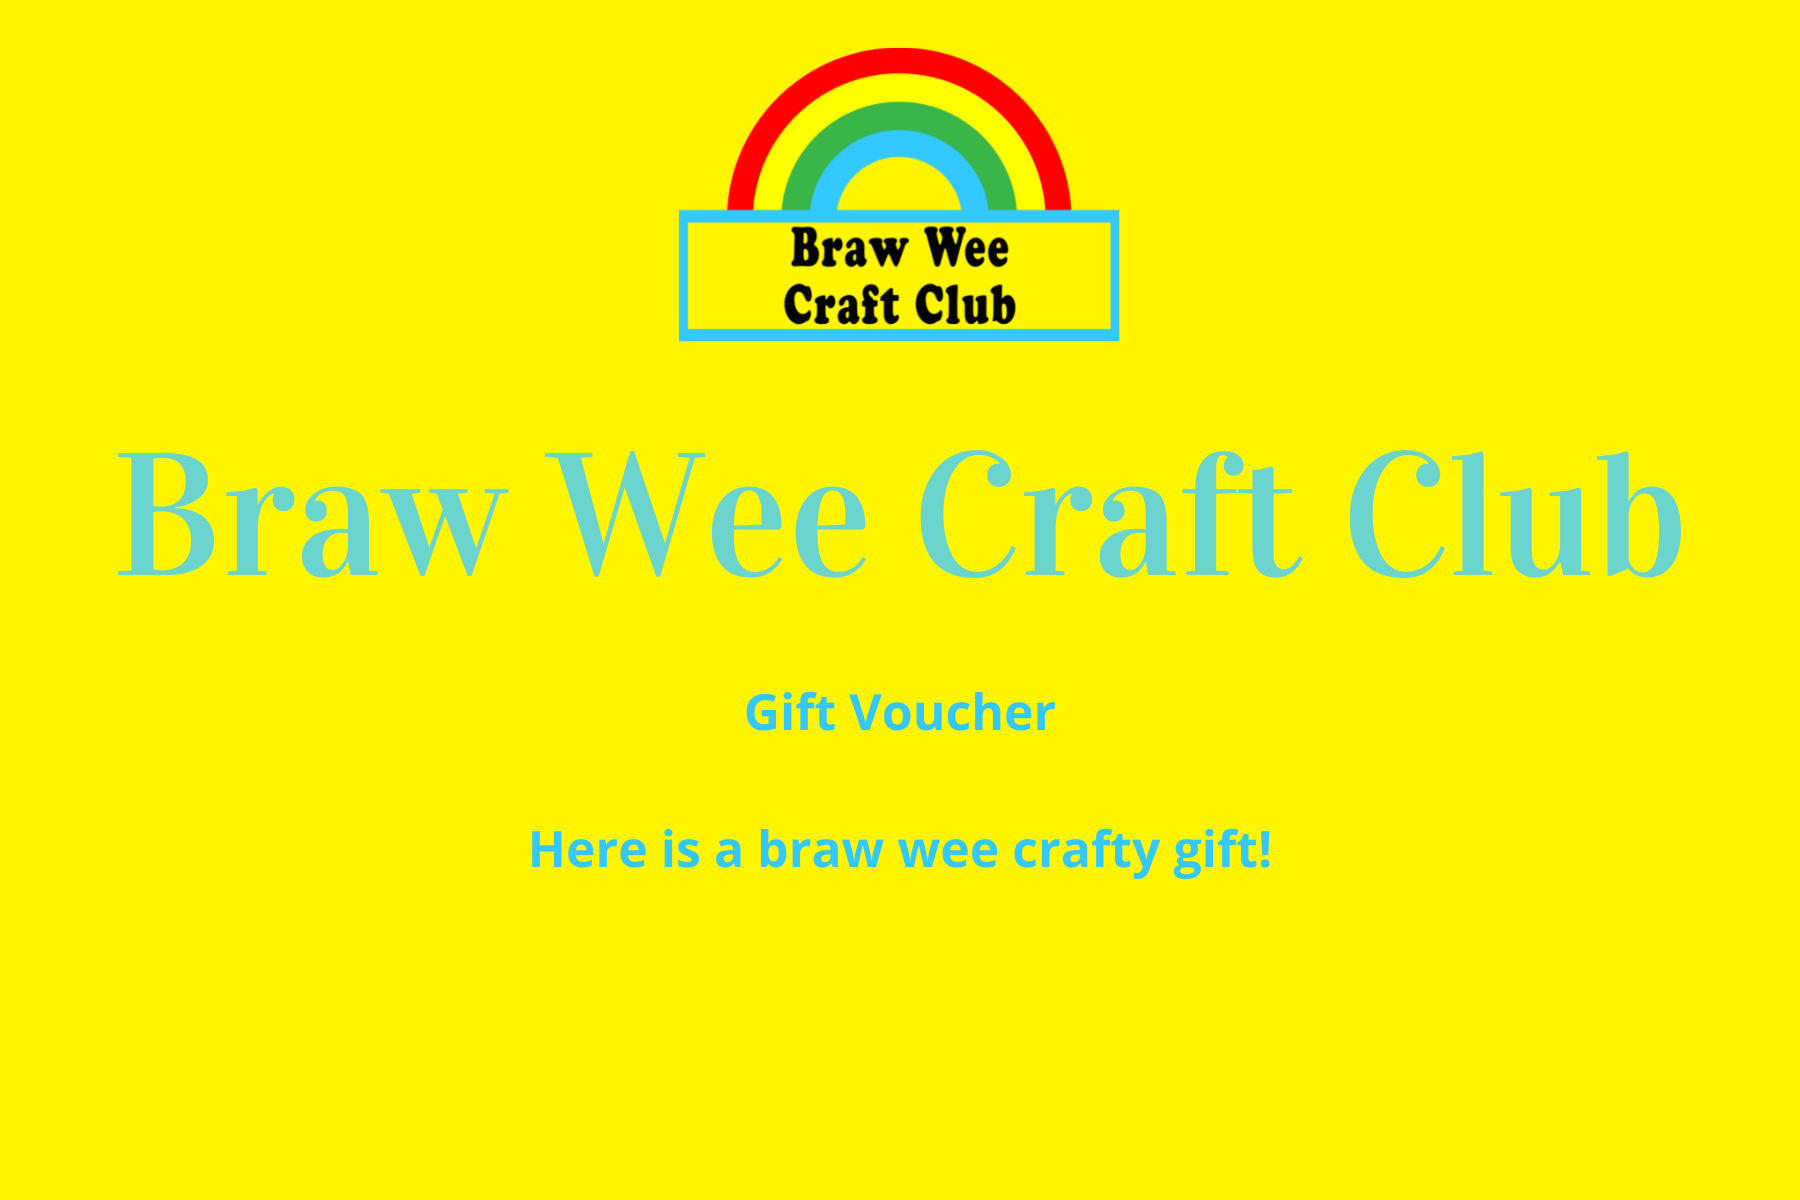 Braw Wee Craft Club Voucher